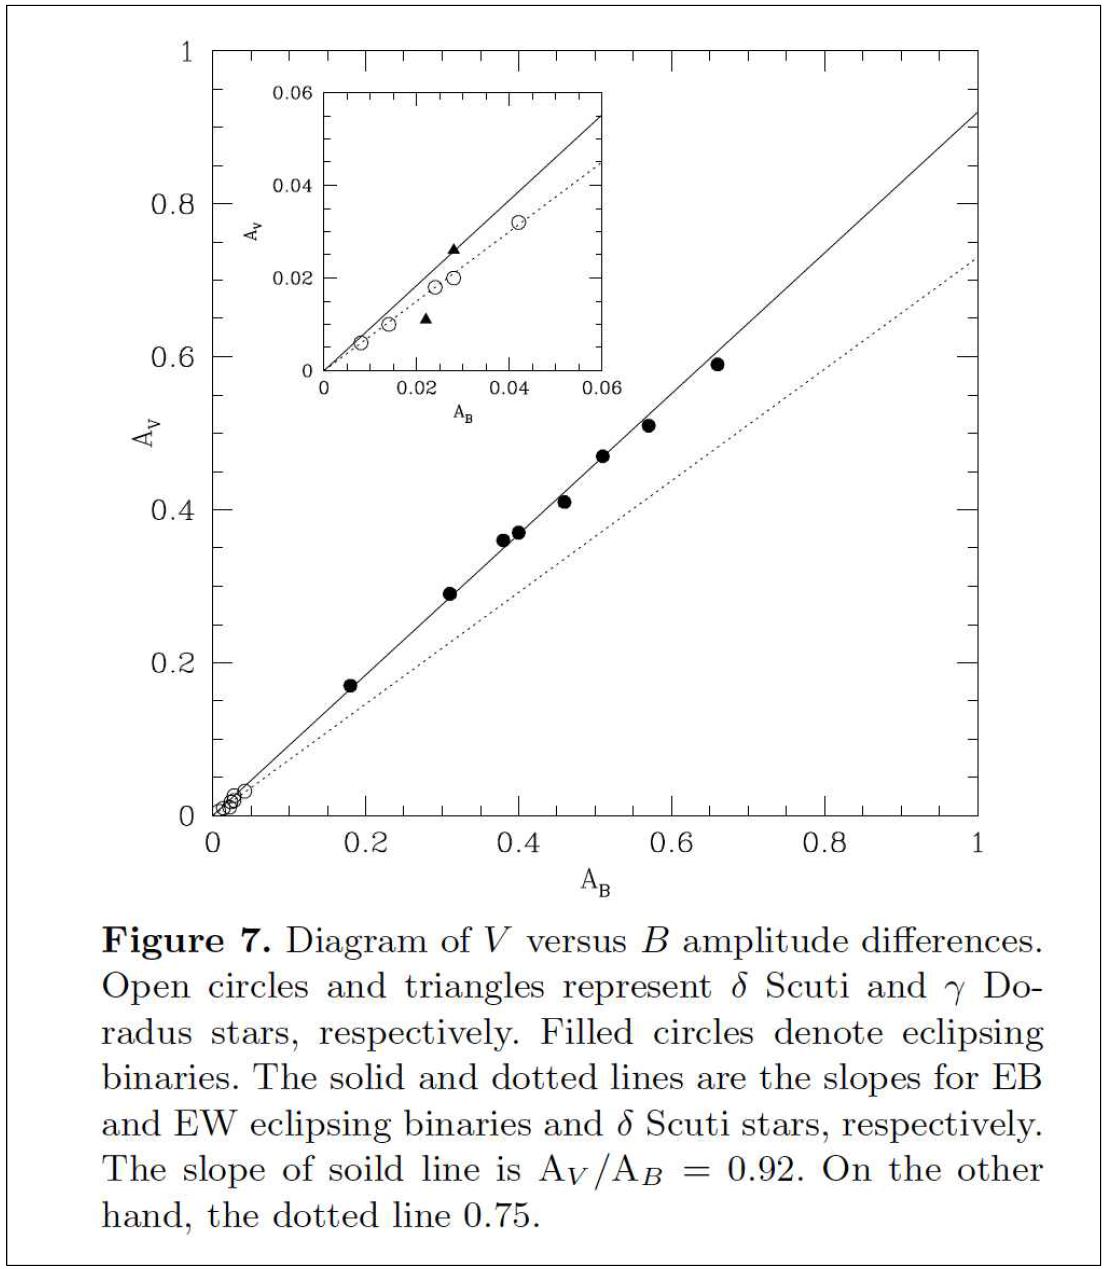 맥동변광성과 식쌍성의 V와 B등급 비, AV/AB.